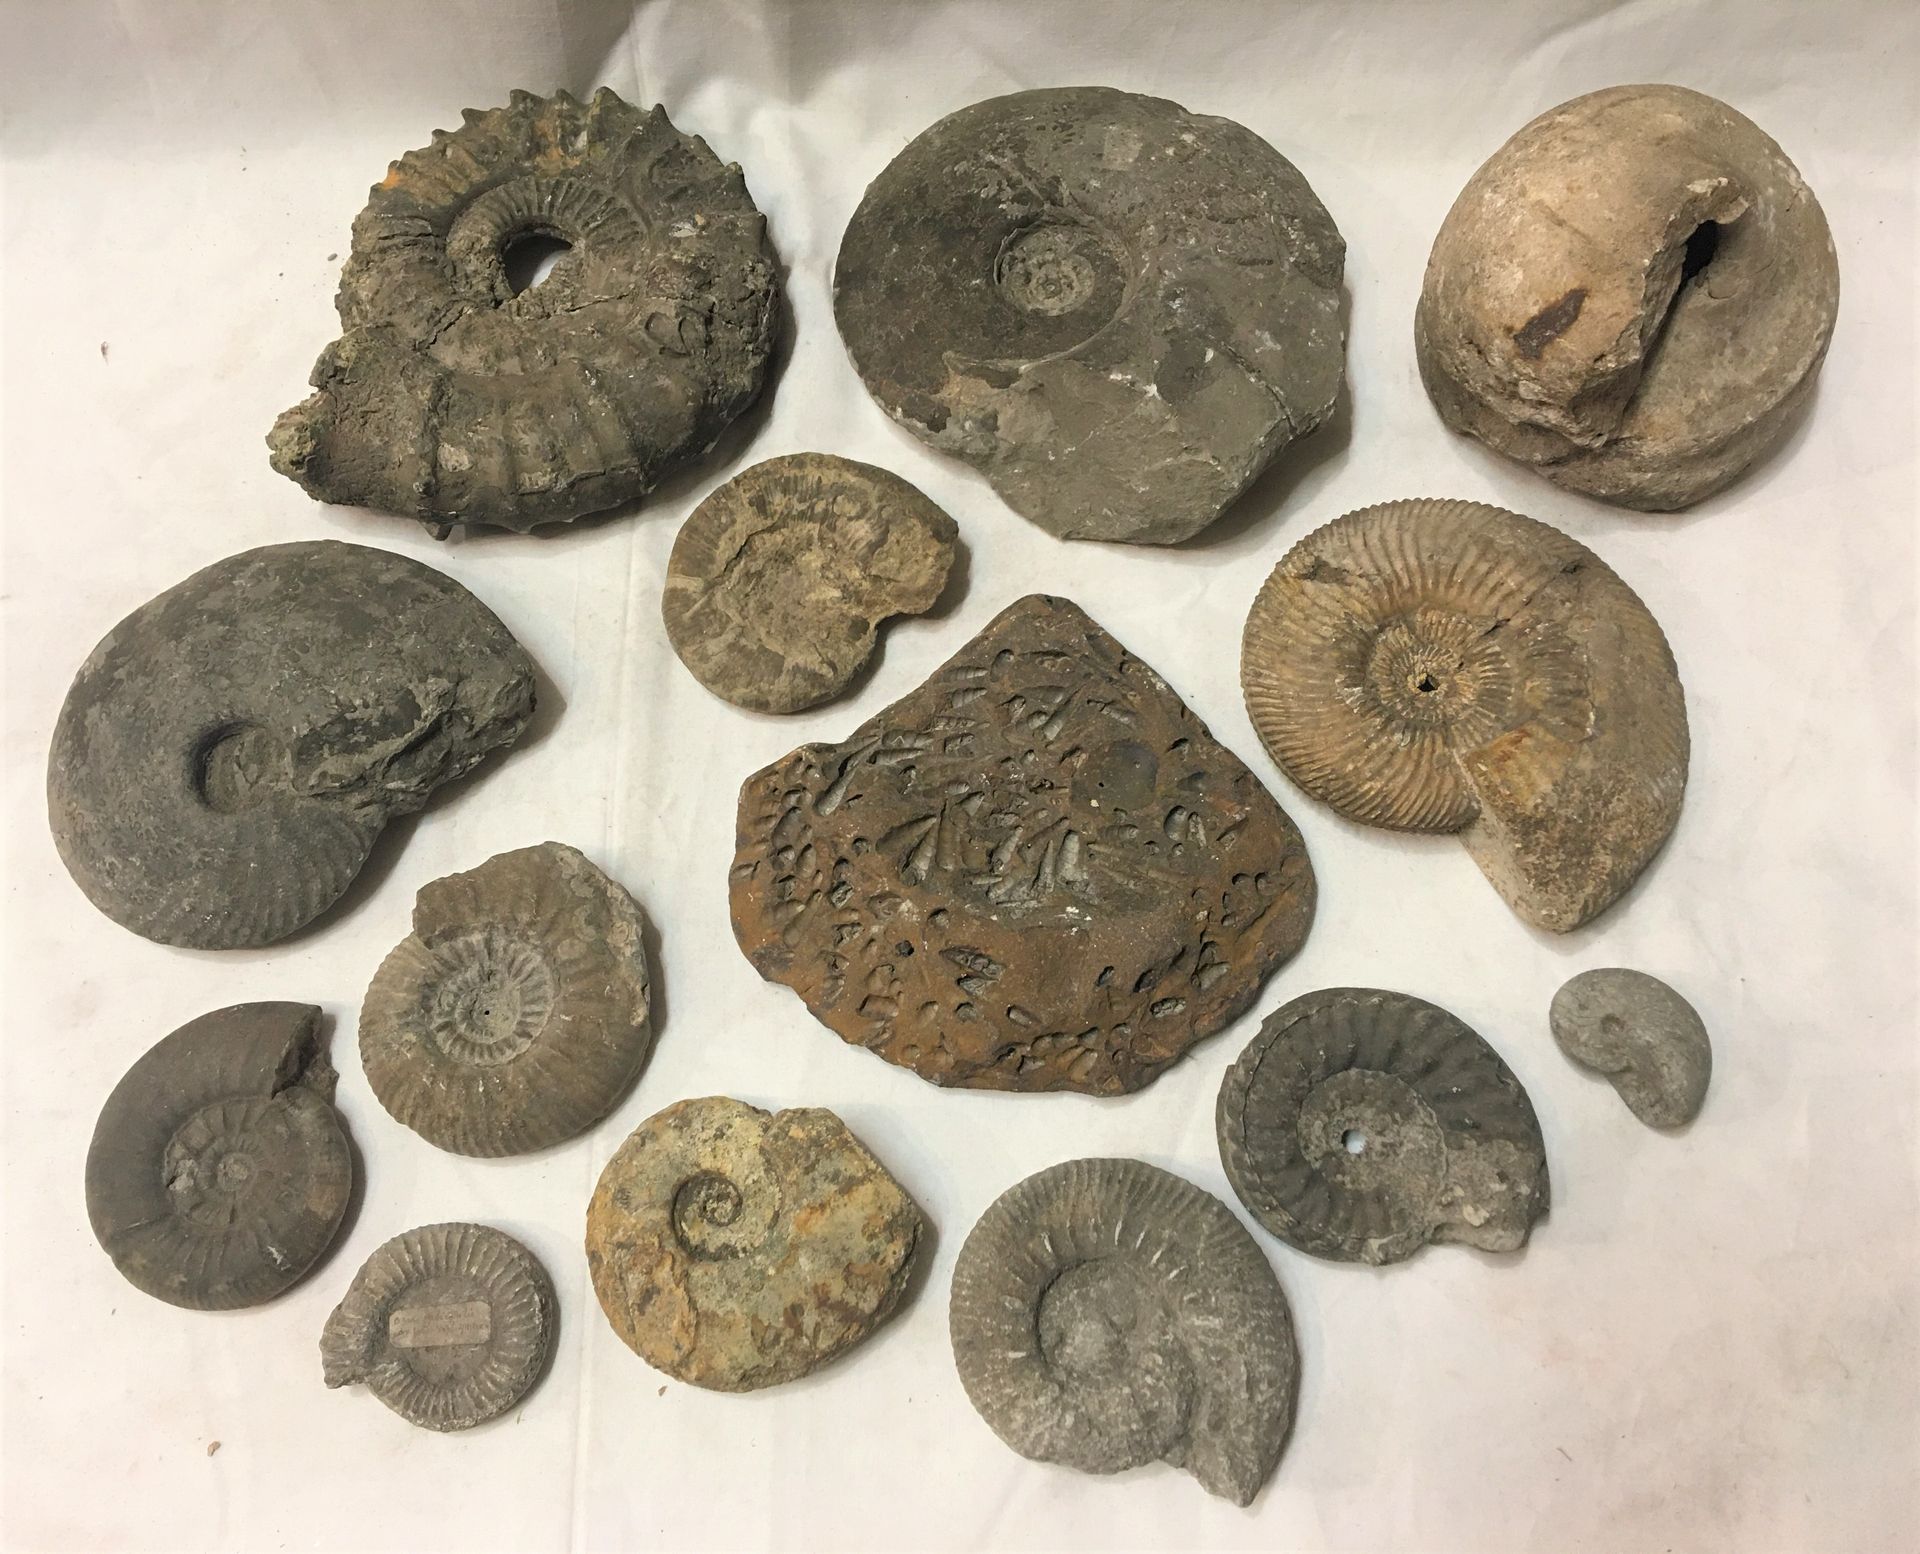 Null Eine Charge von Fossilien, die etwa 12 Ammoniten-Exemplare umfasst